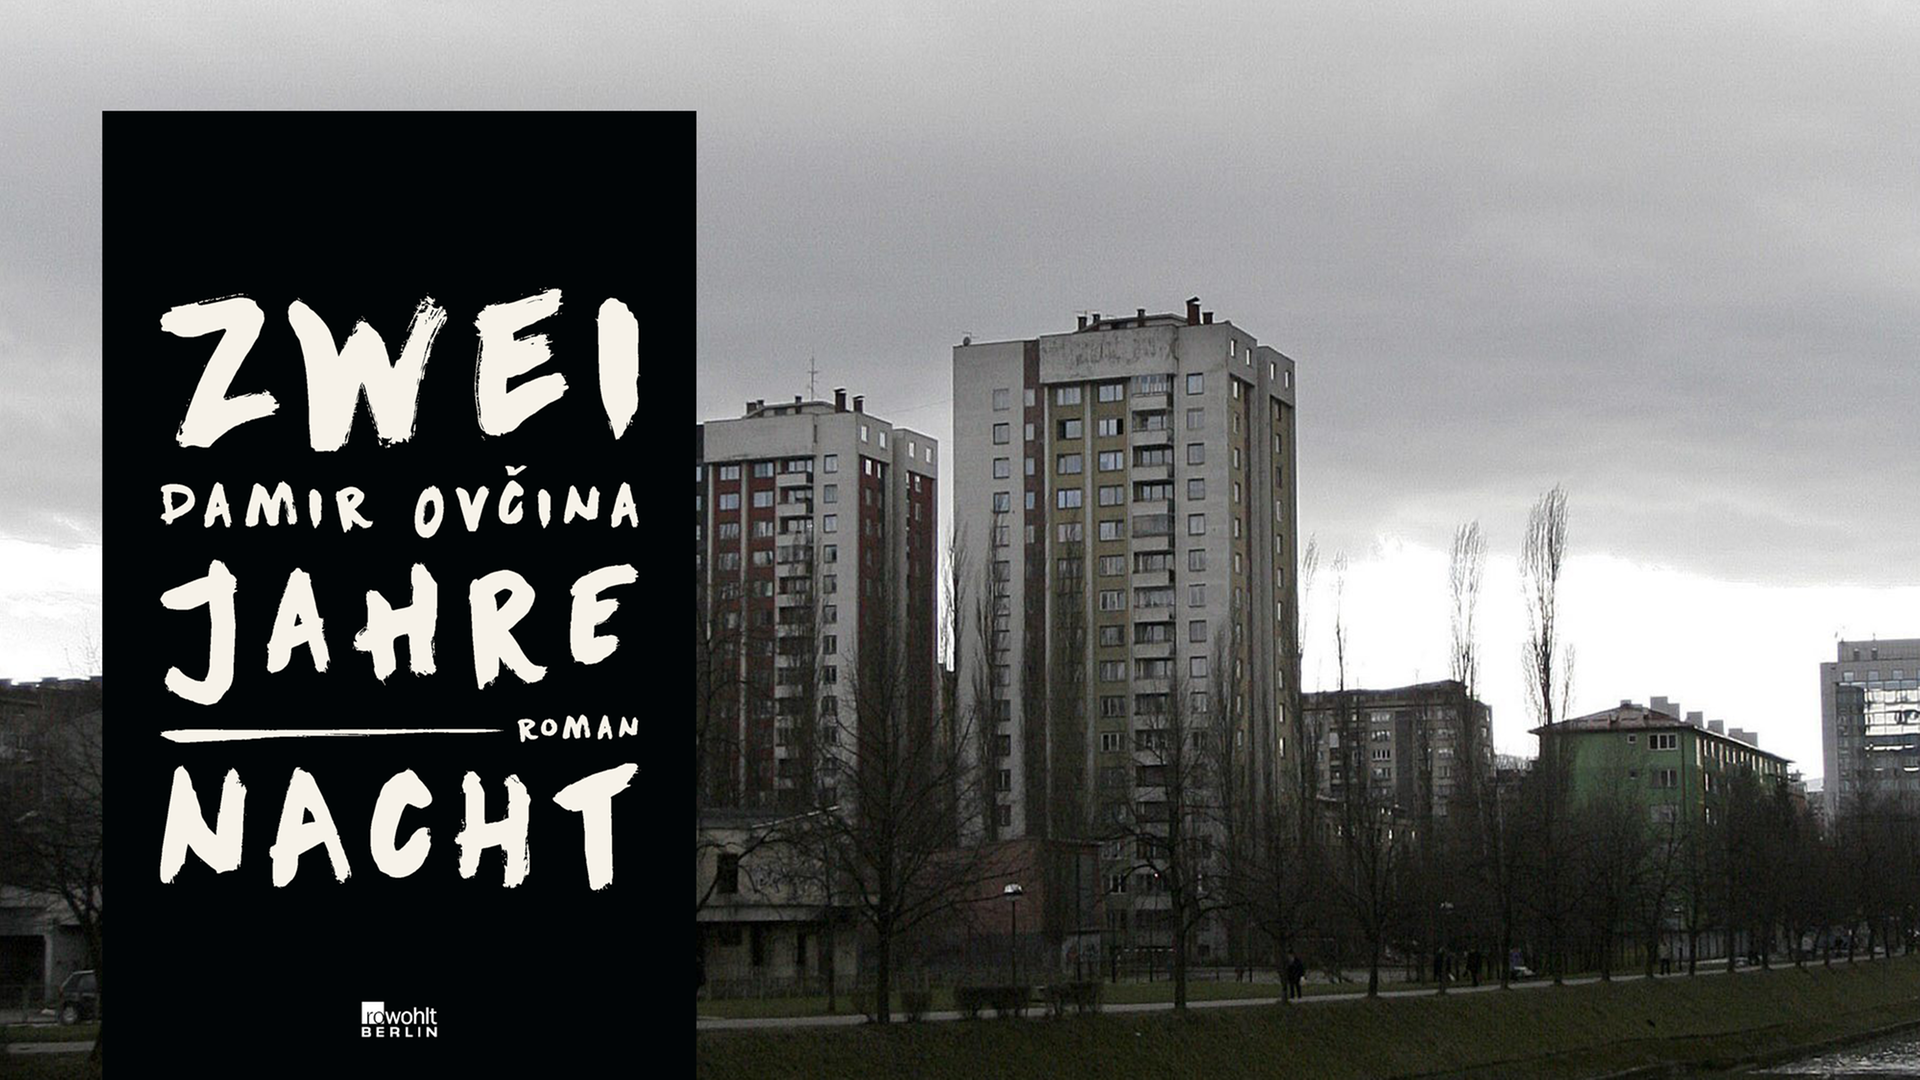 Im Vordergrund ist das Cover des Buches "Zwei Jahre Nacht" zu sehen, im Hintergrund sind Hochhäuser des Stadtteils Grbavica in Sarajevo abgebildet.